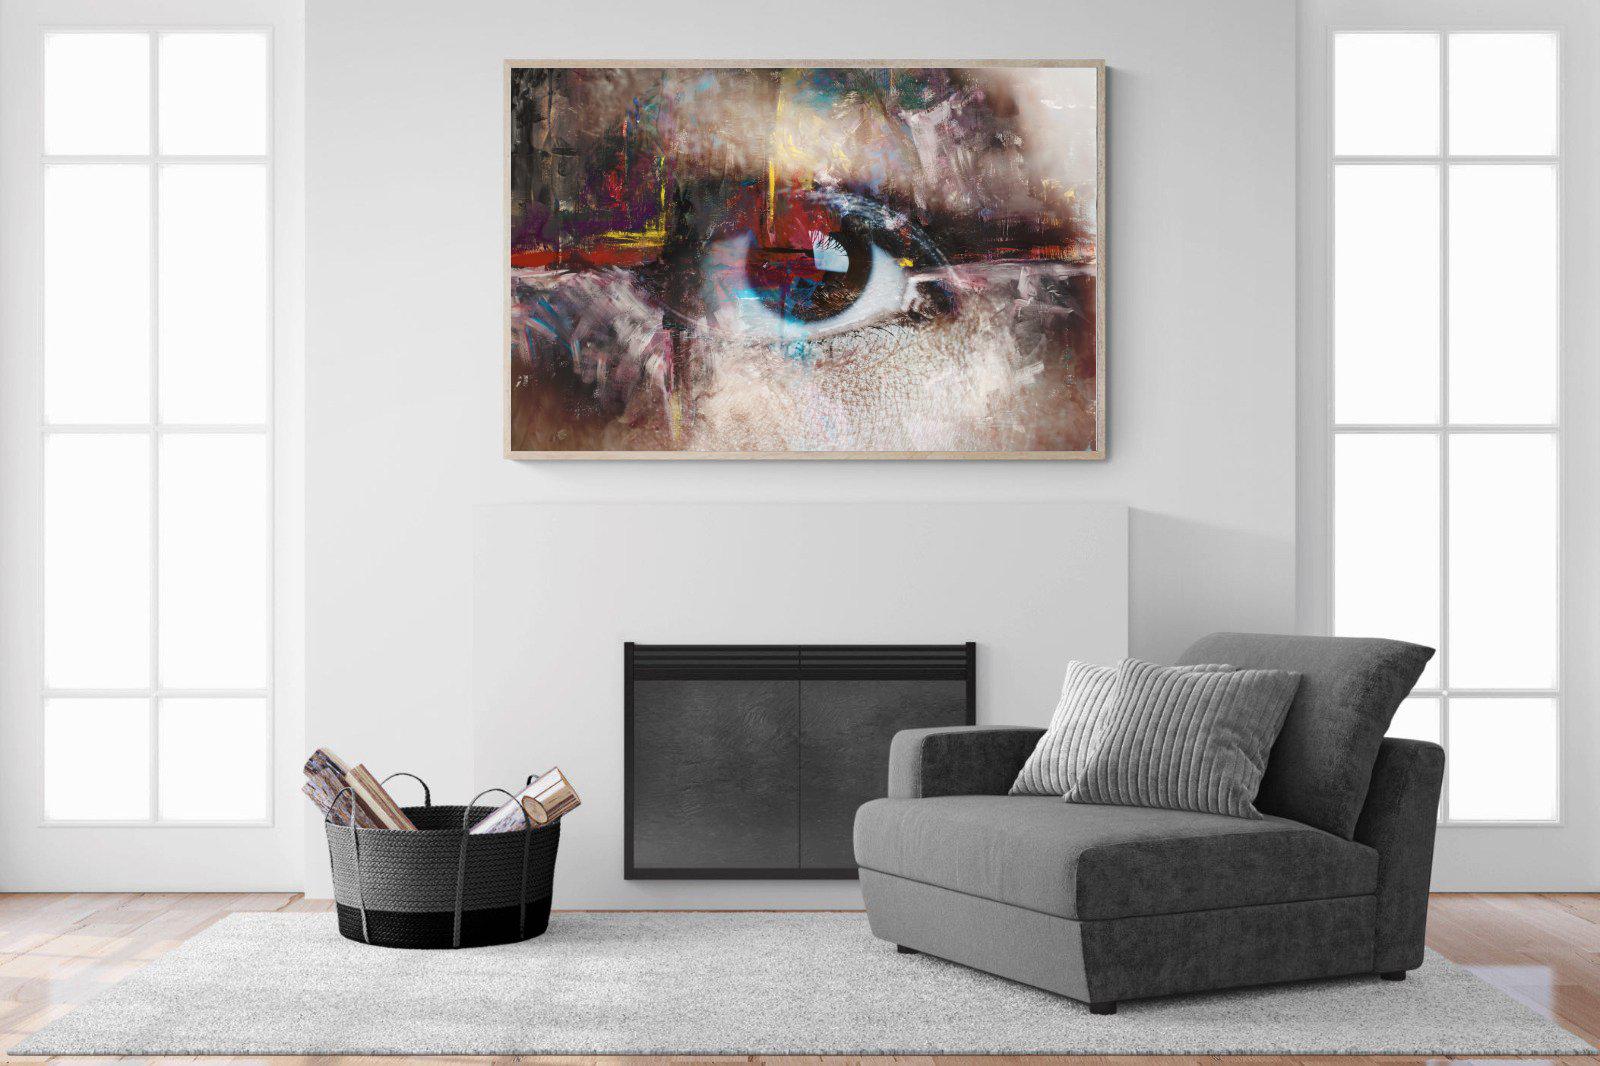 Eye Spy-Wall_Art-150 x 100cm-Mounted Canvas-Wood-Pixalot